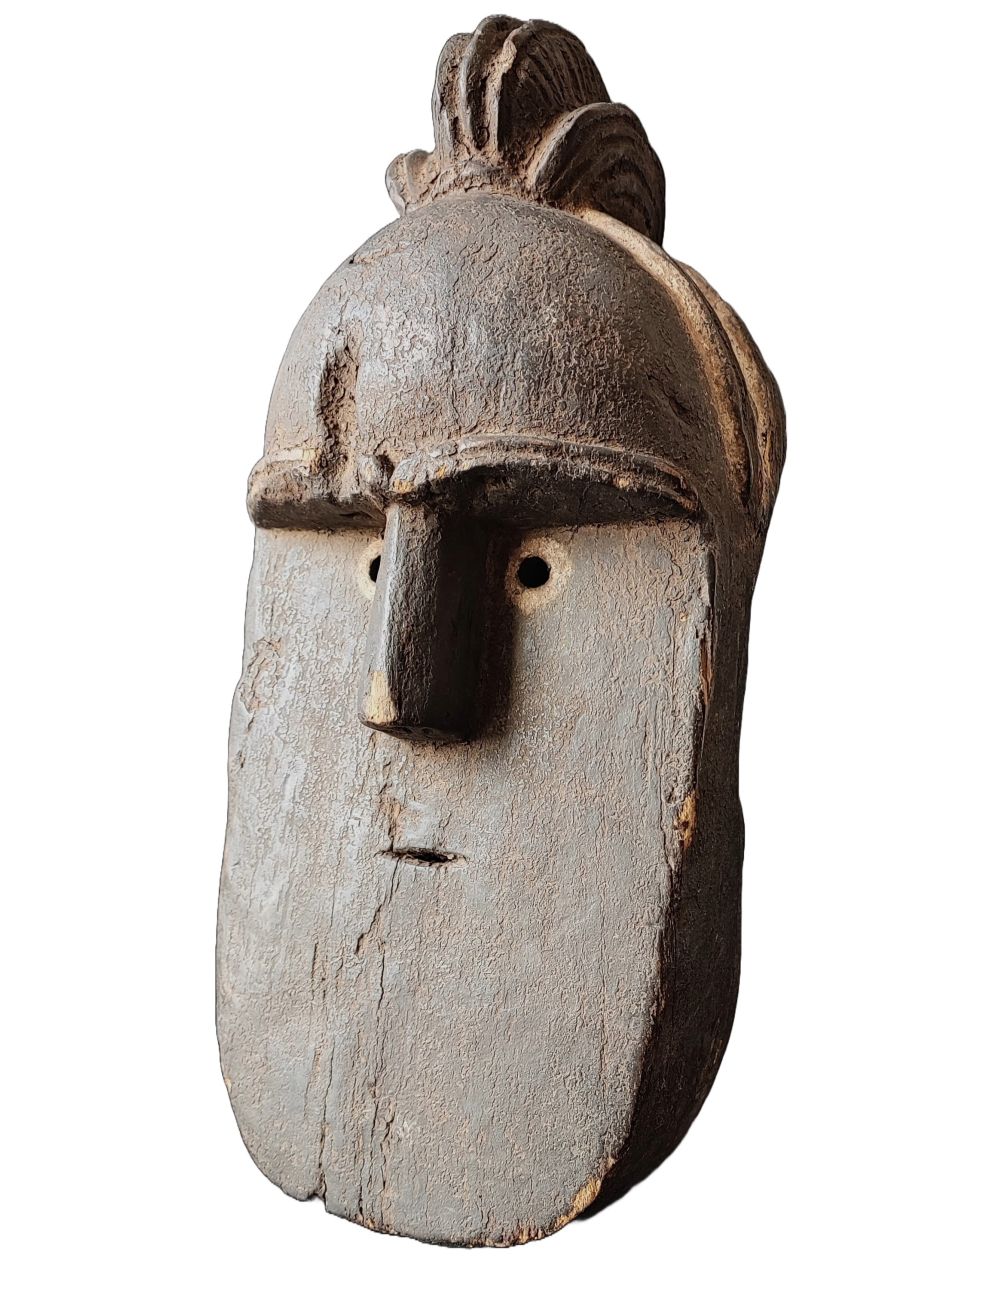 Maska obrzędowa plemienia Toma dorzecze Nigeru Afryka